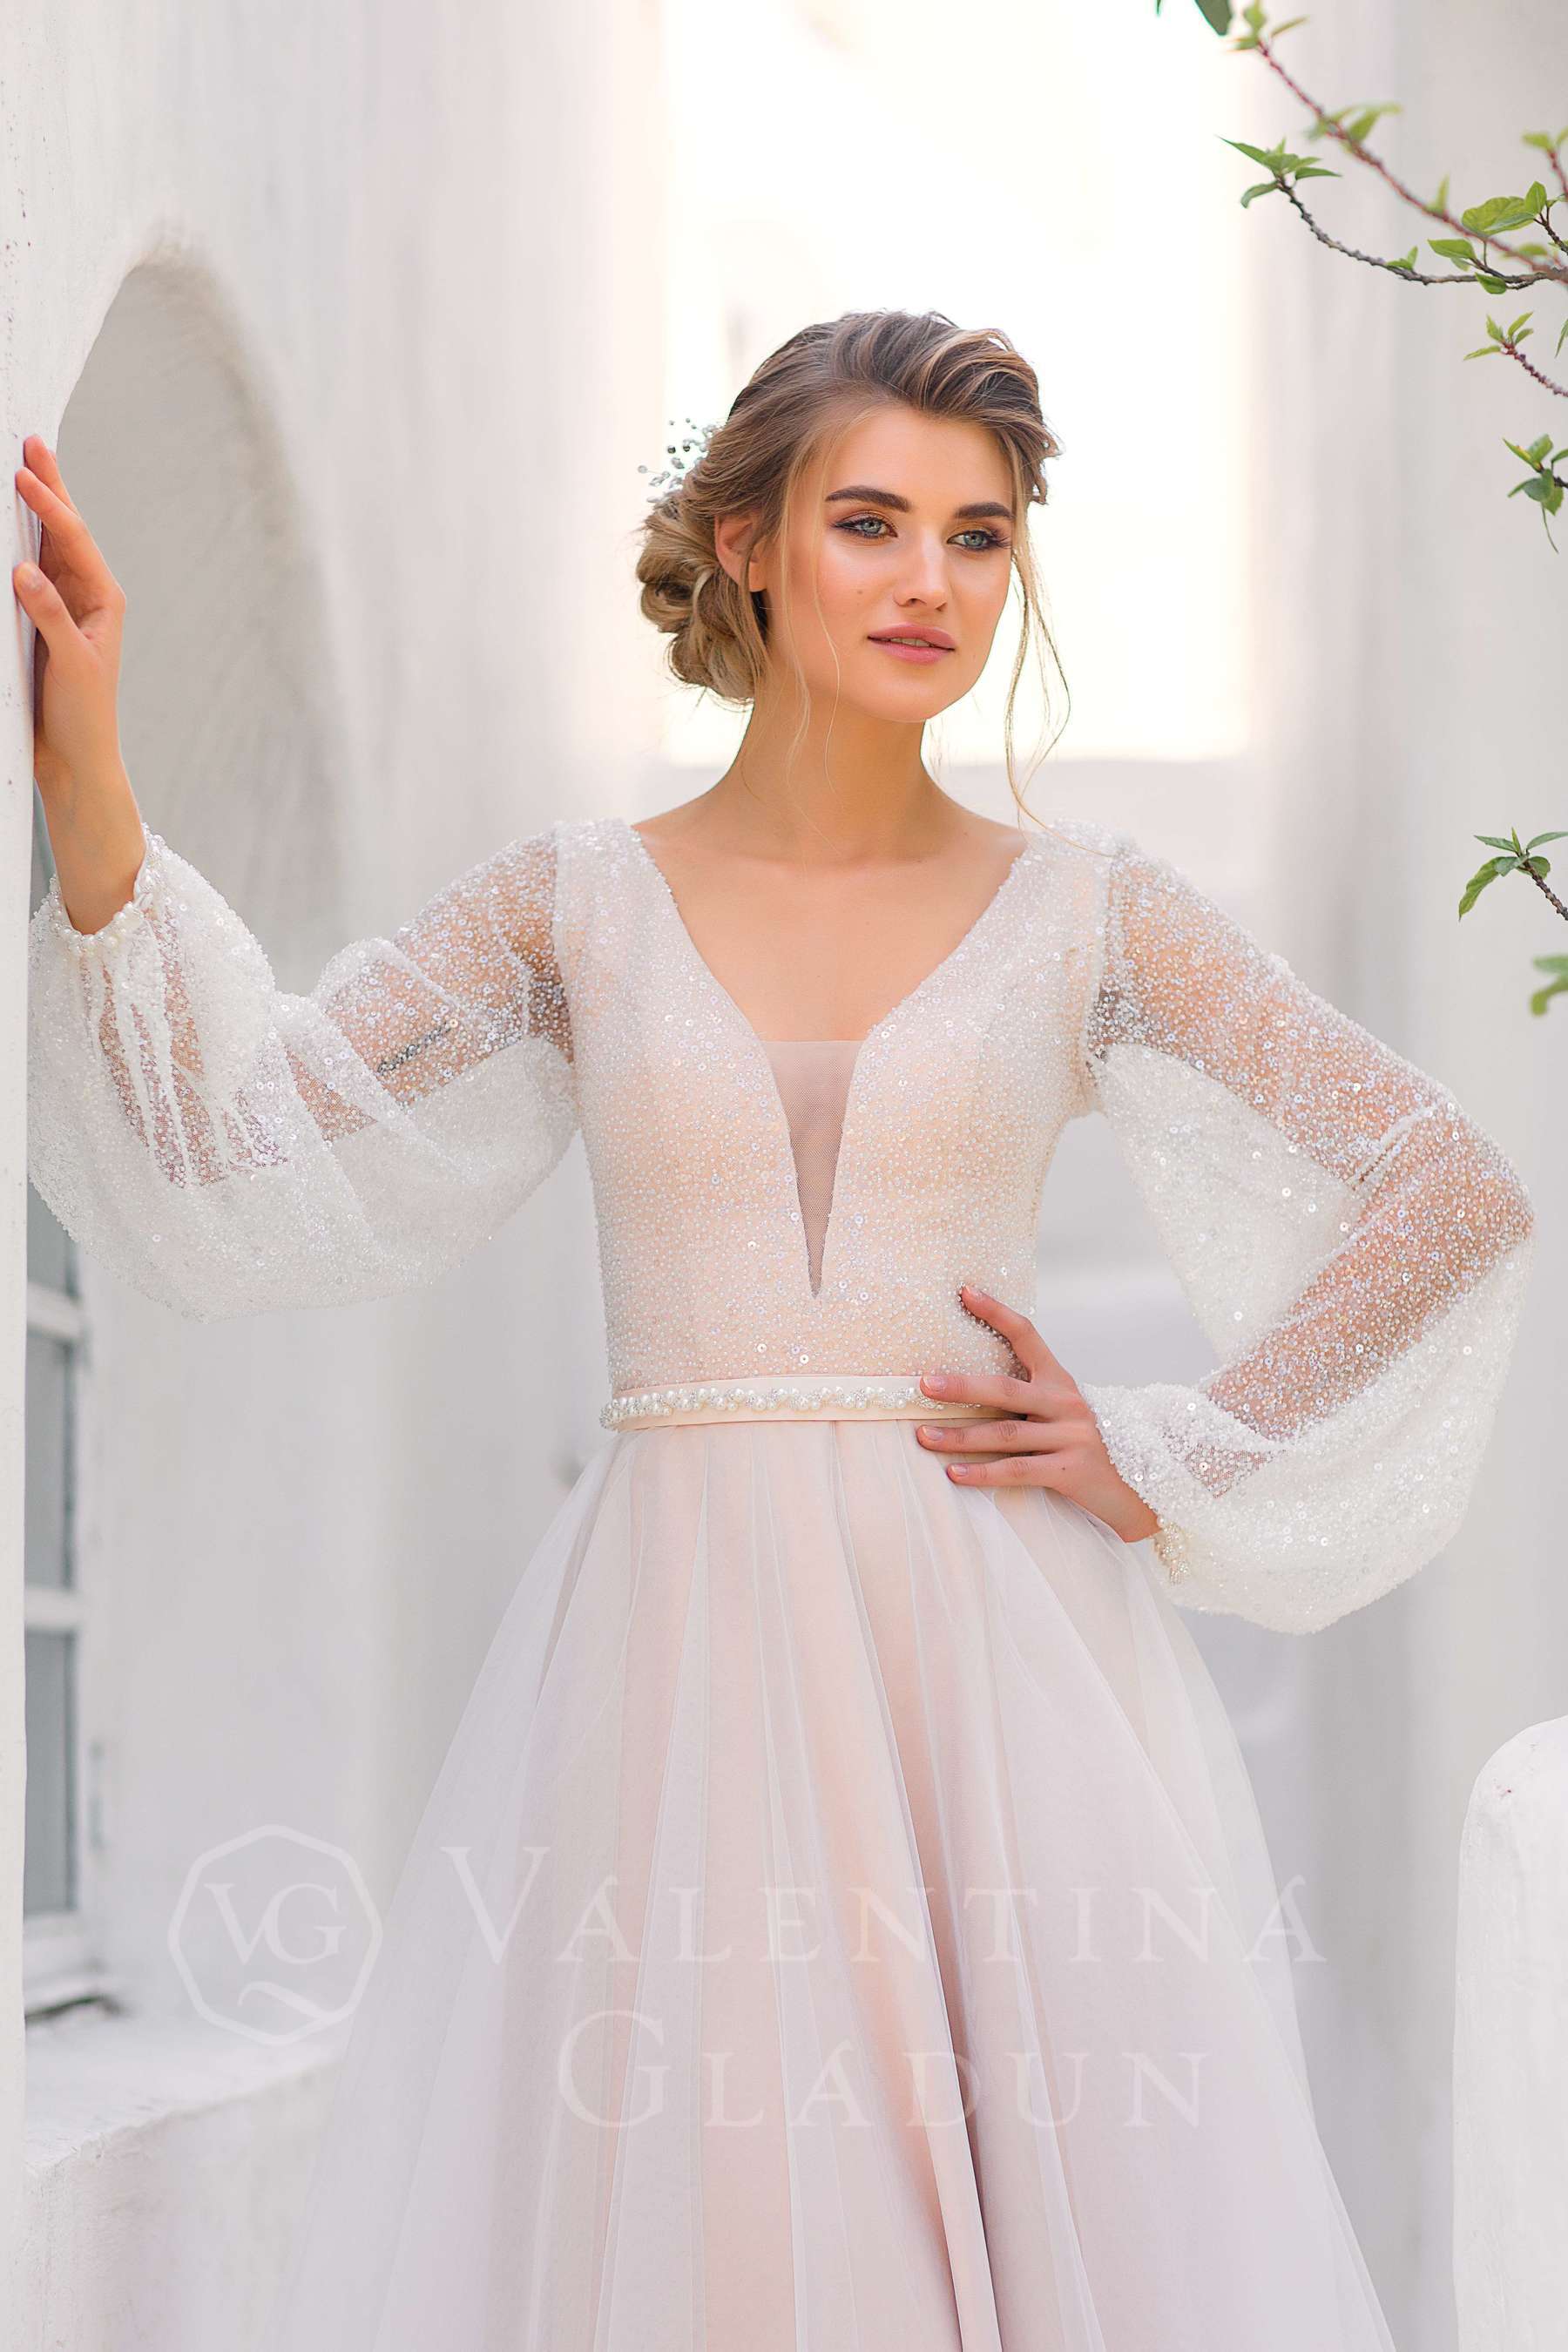 Мерцающее свадебное платье с рукавами и декольте Вольтерра 2020-2021